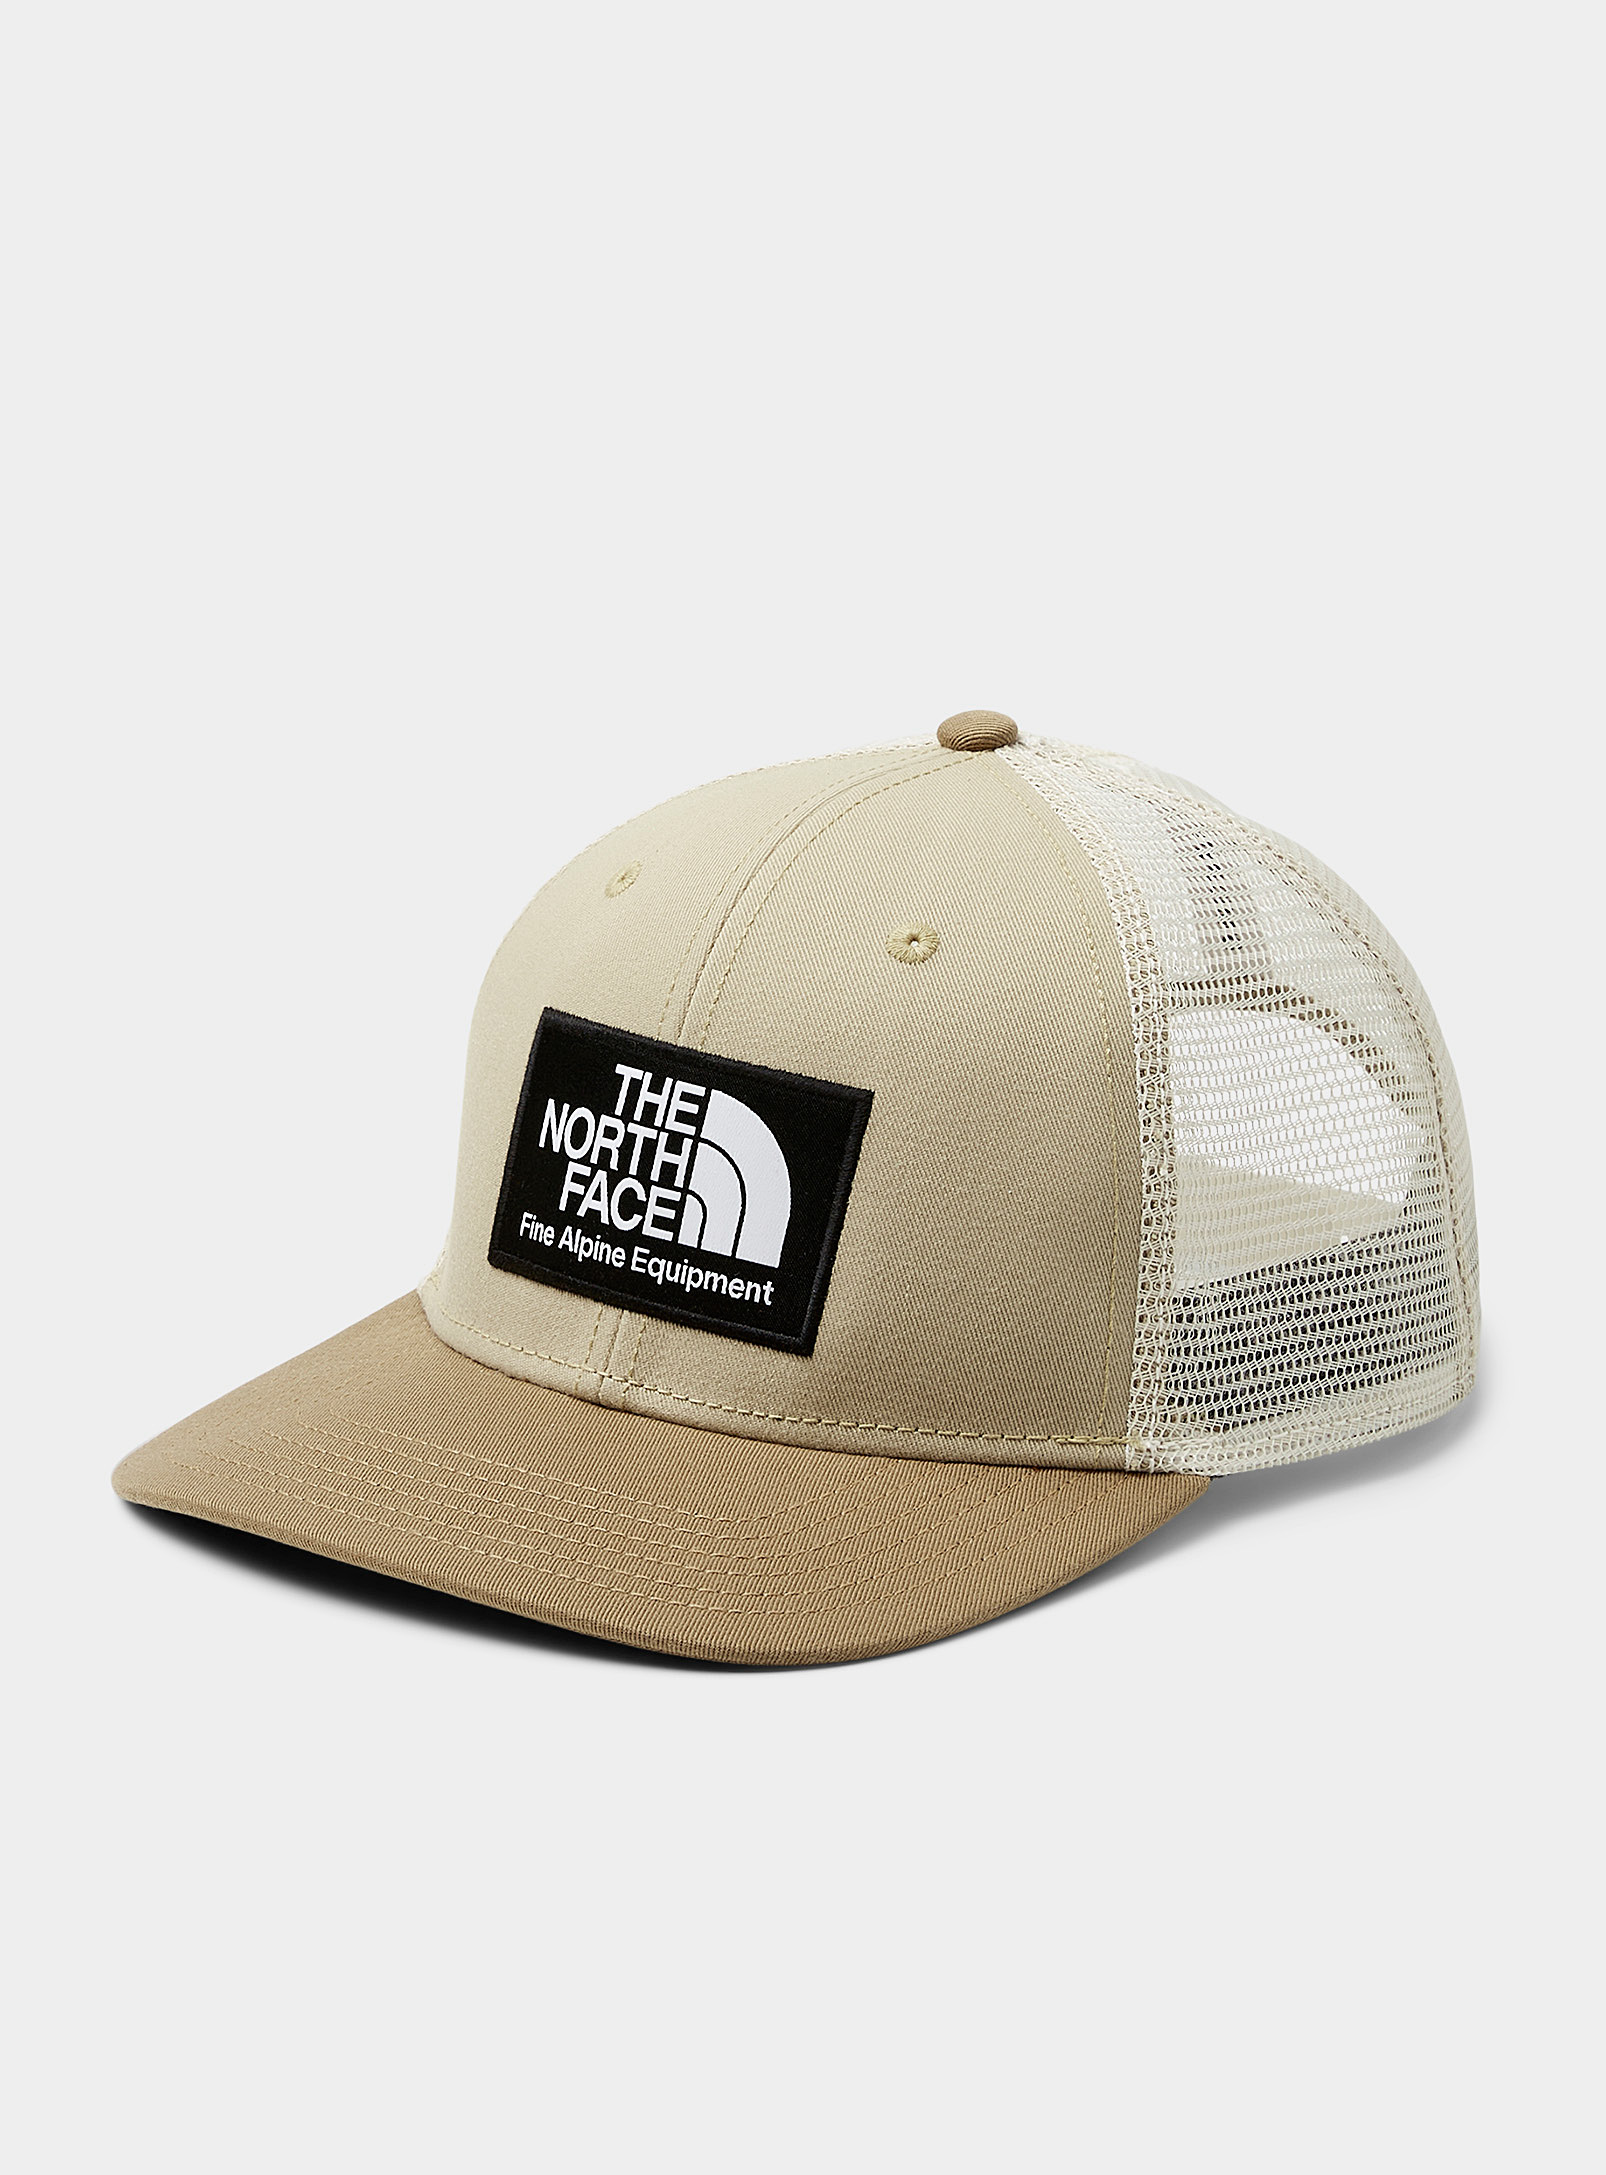 The North Face - Men's TNF logo trucker cap